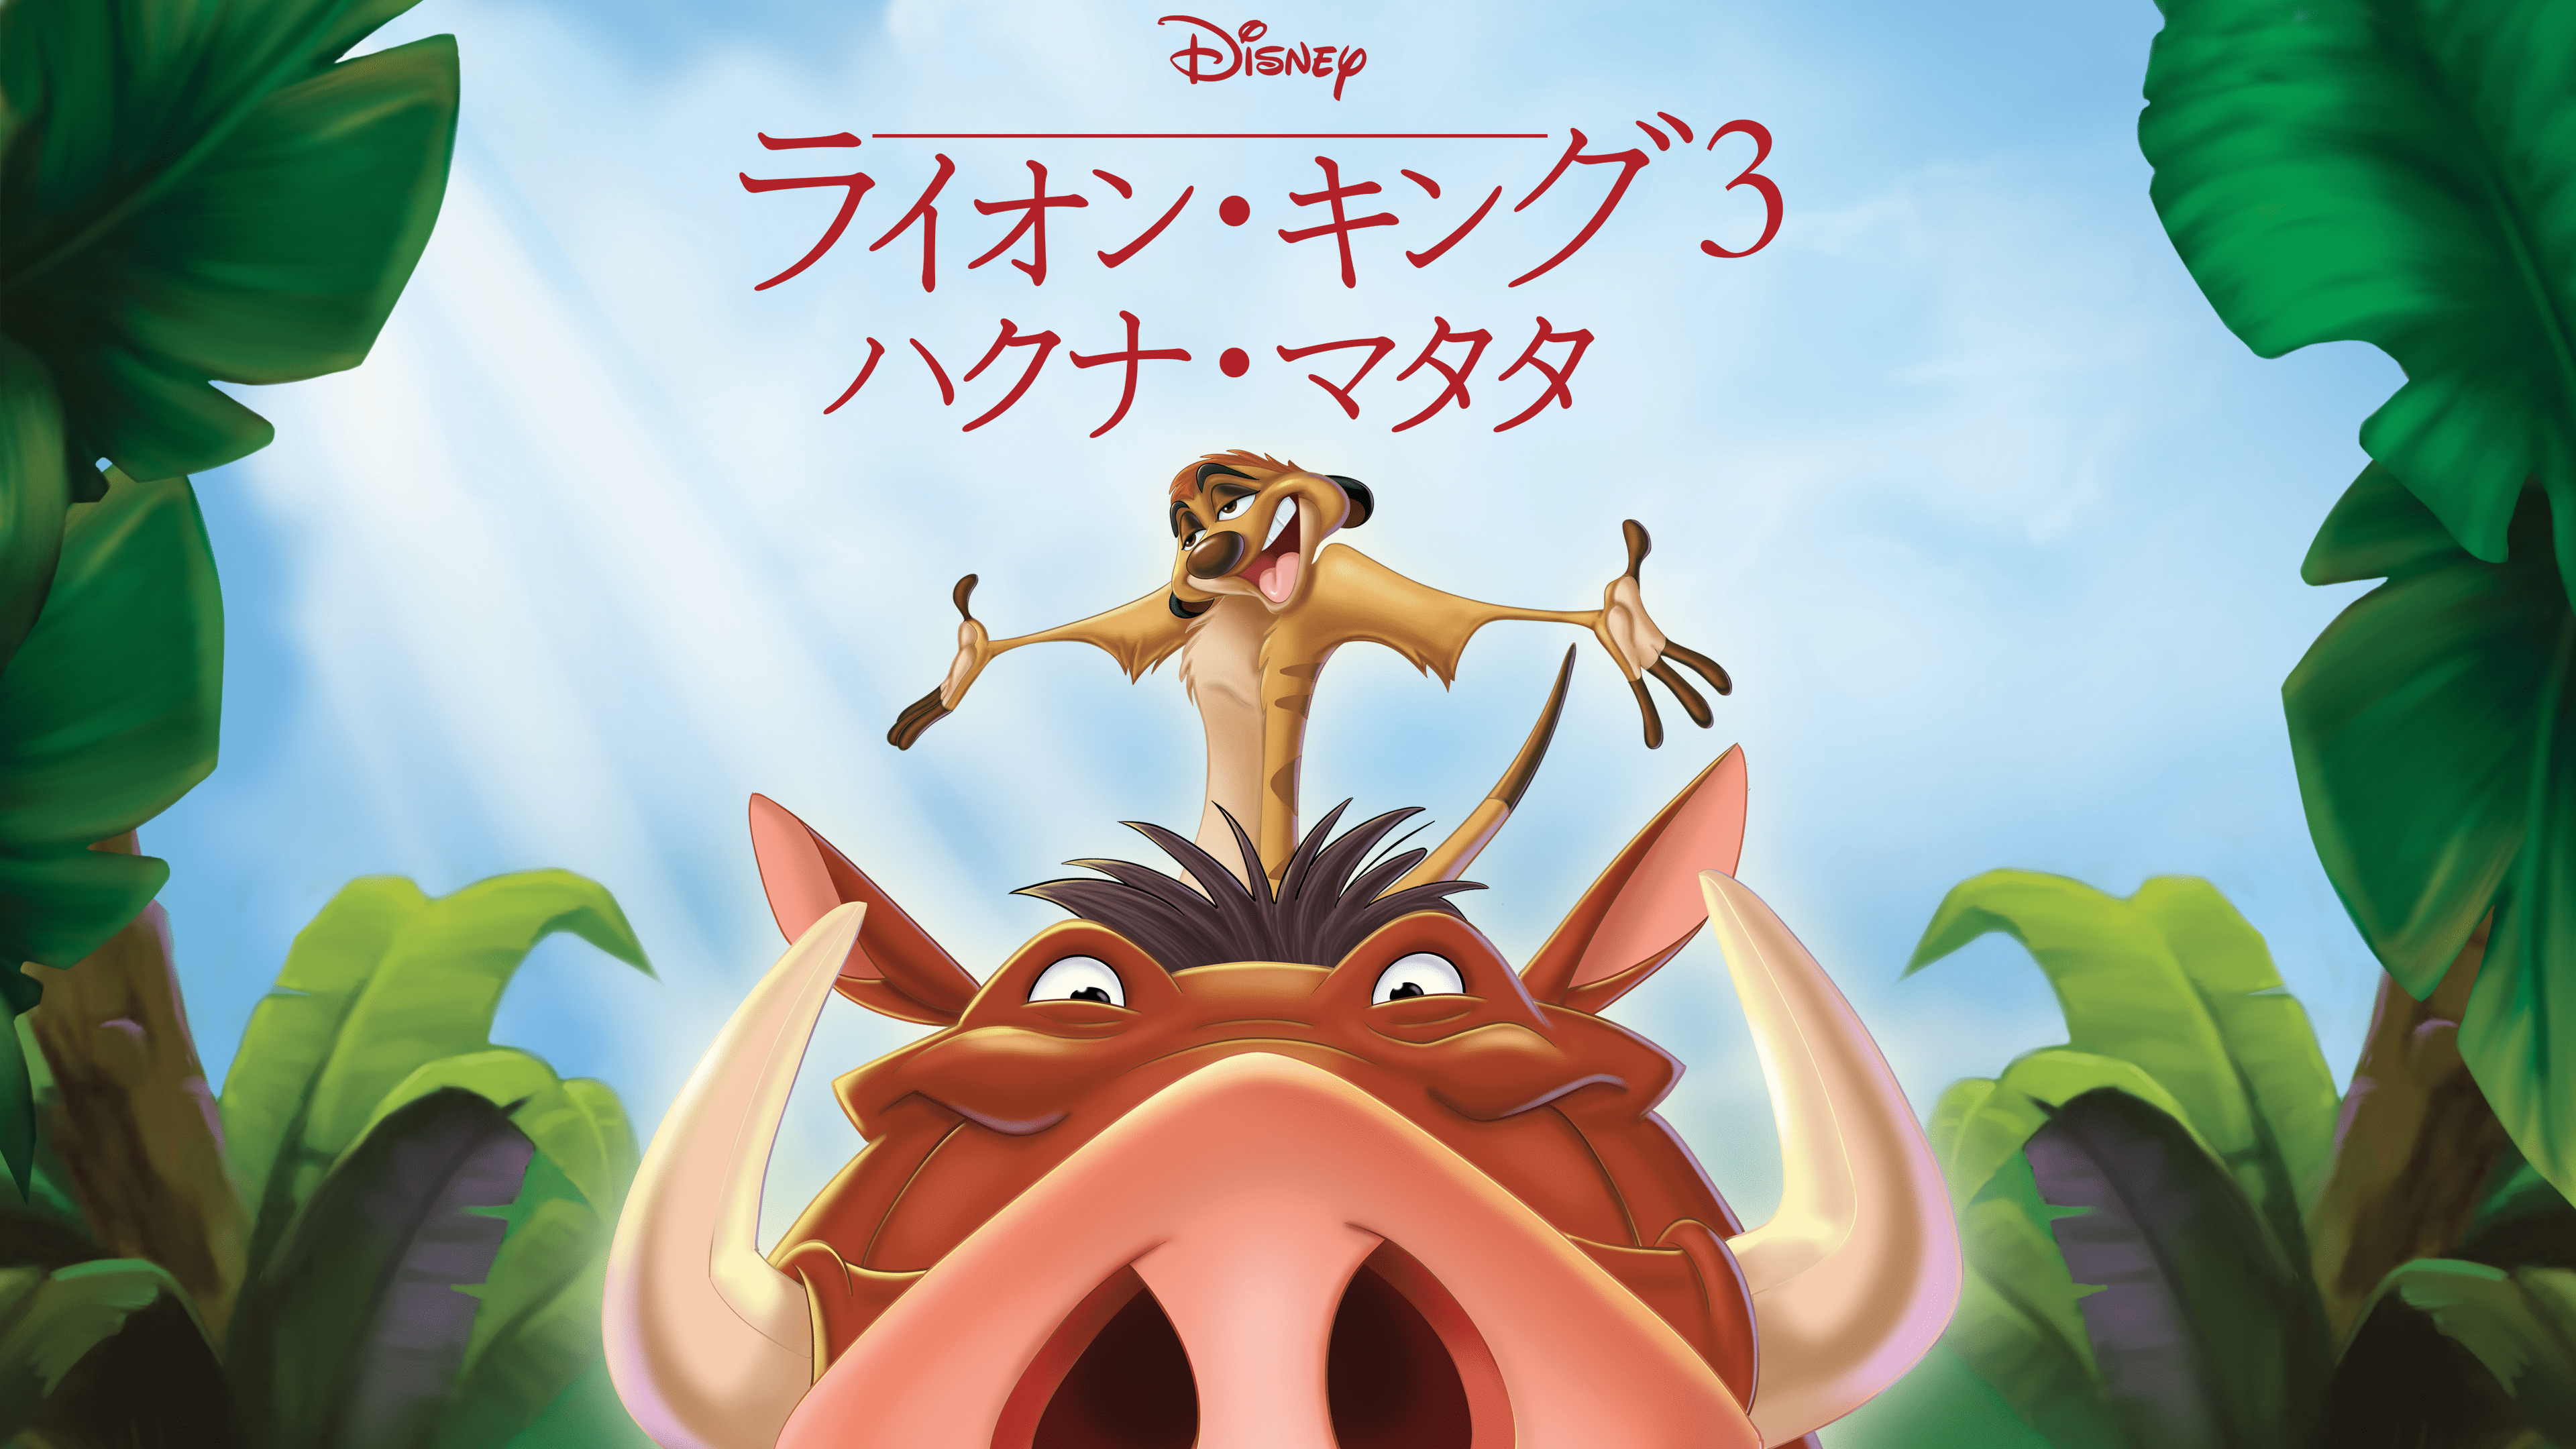 ライオン・キング3 ハクナ・マタタを視聴 | Disney+(ディズニープラス)